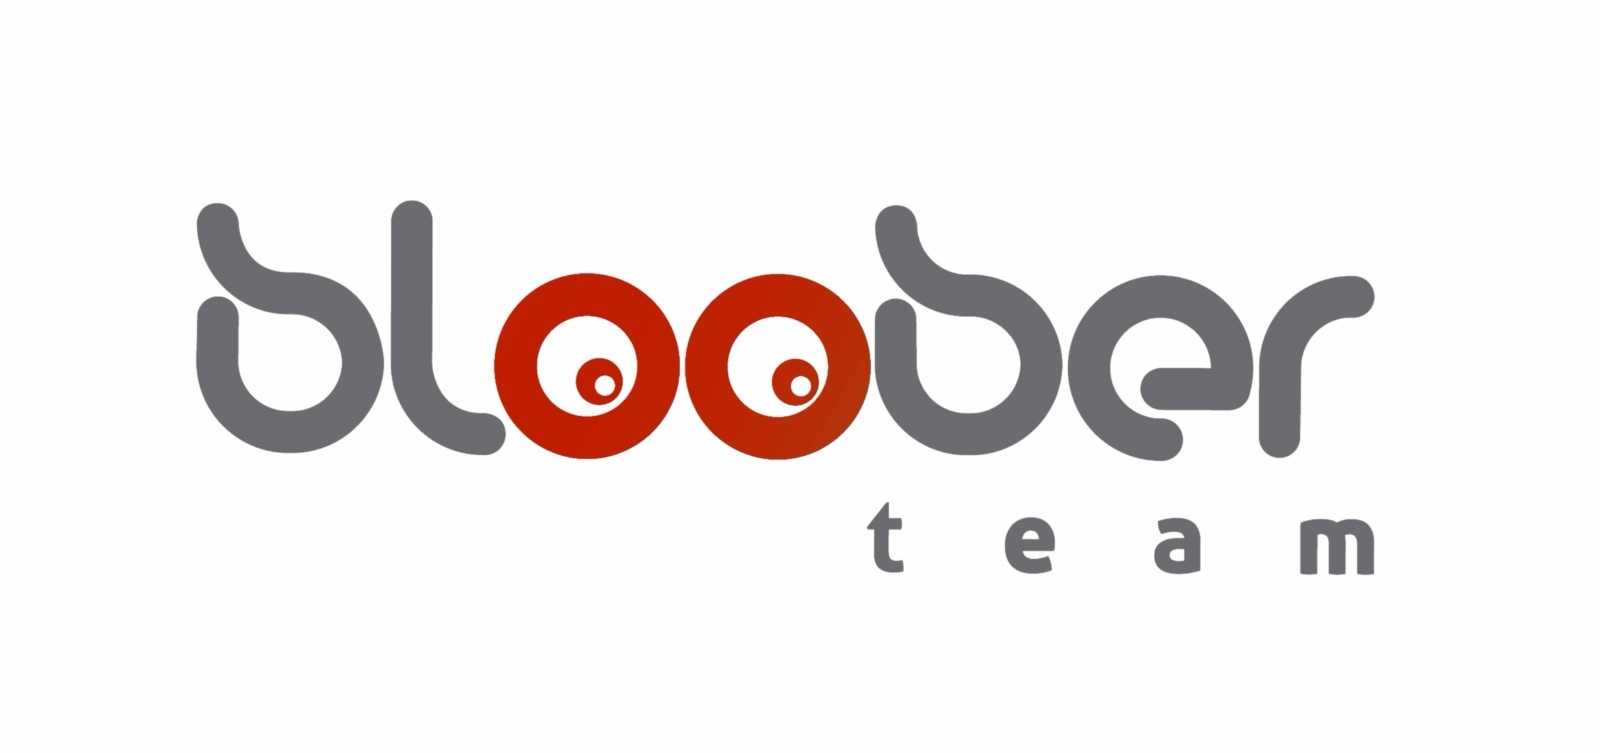 腾讯子公司收购波兰游戏开发商Bloober Team近22%股权